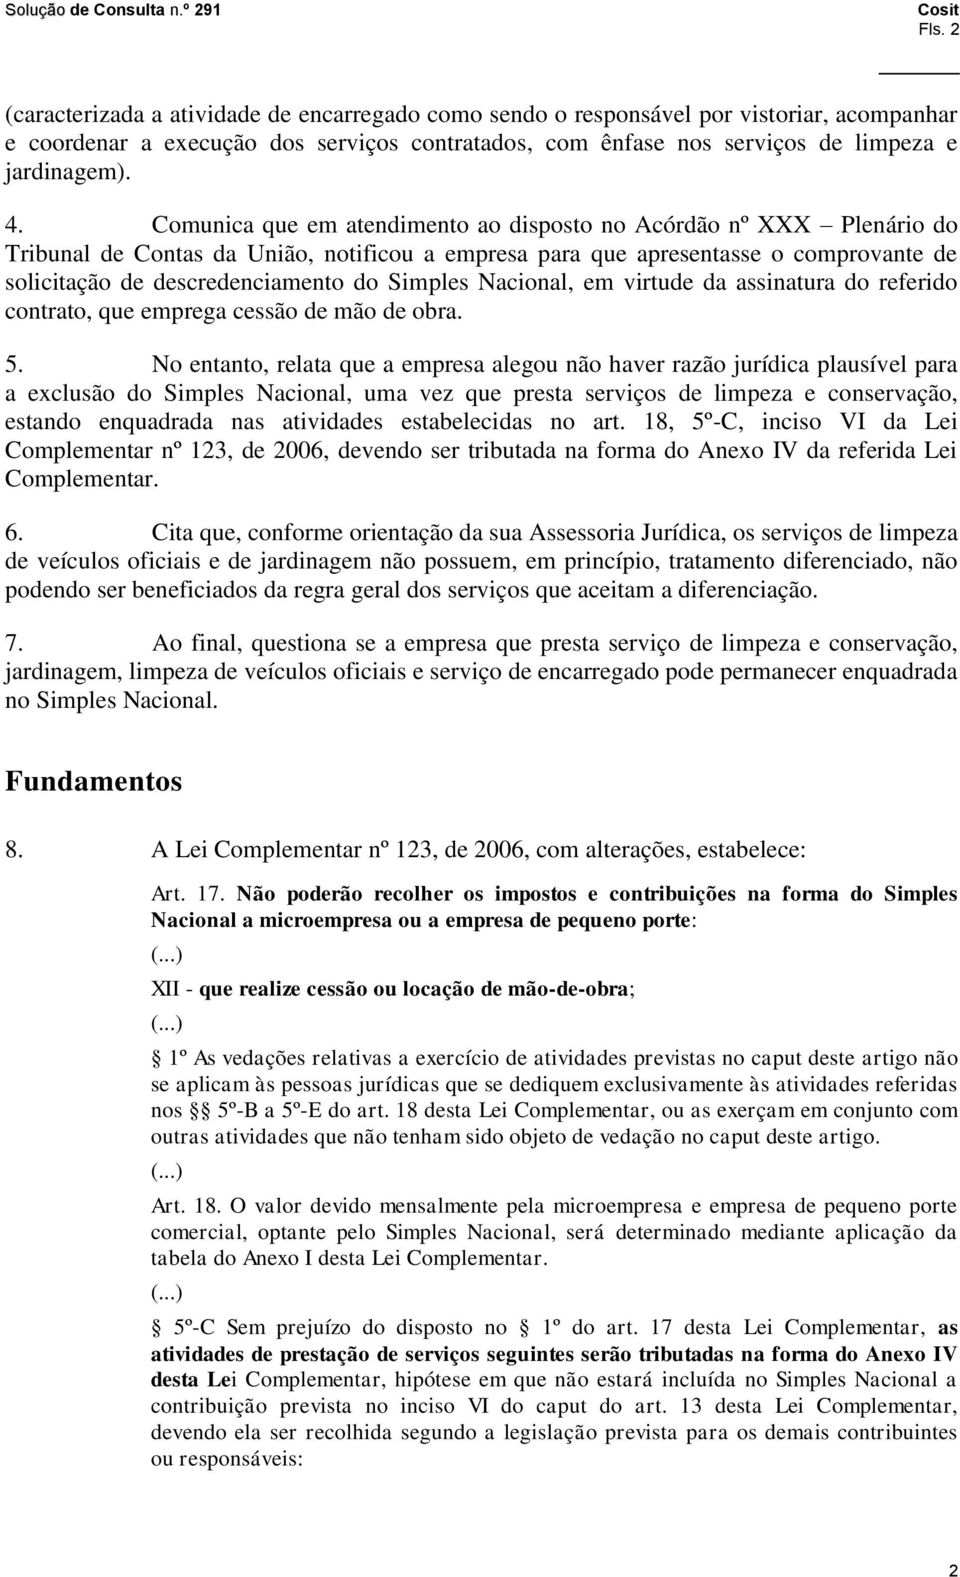 Simples Nacional, em virtude da assinatura do referido contrato, que emprega cessão de mão de obra. 5.